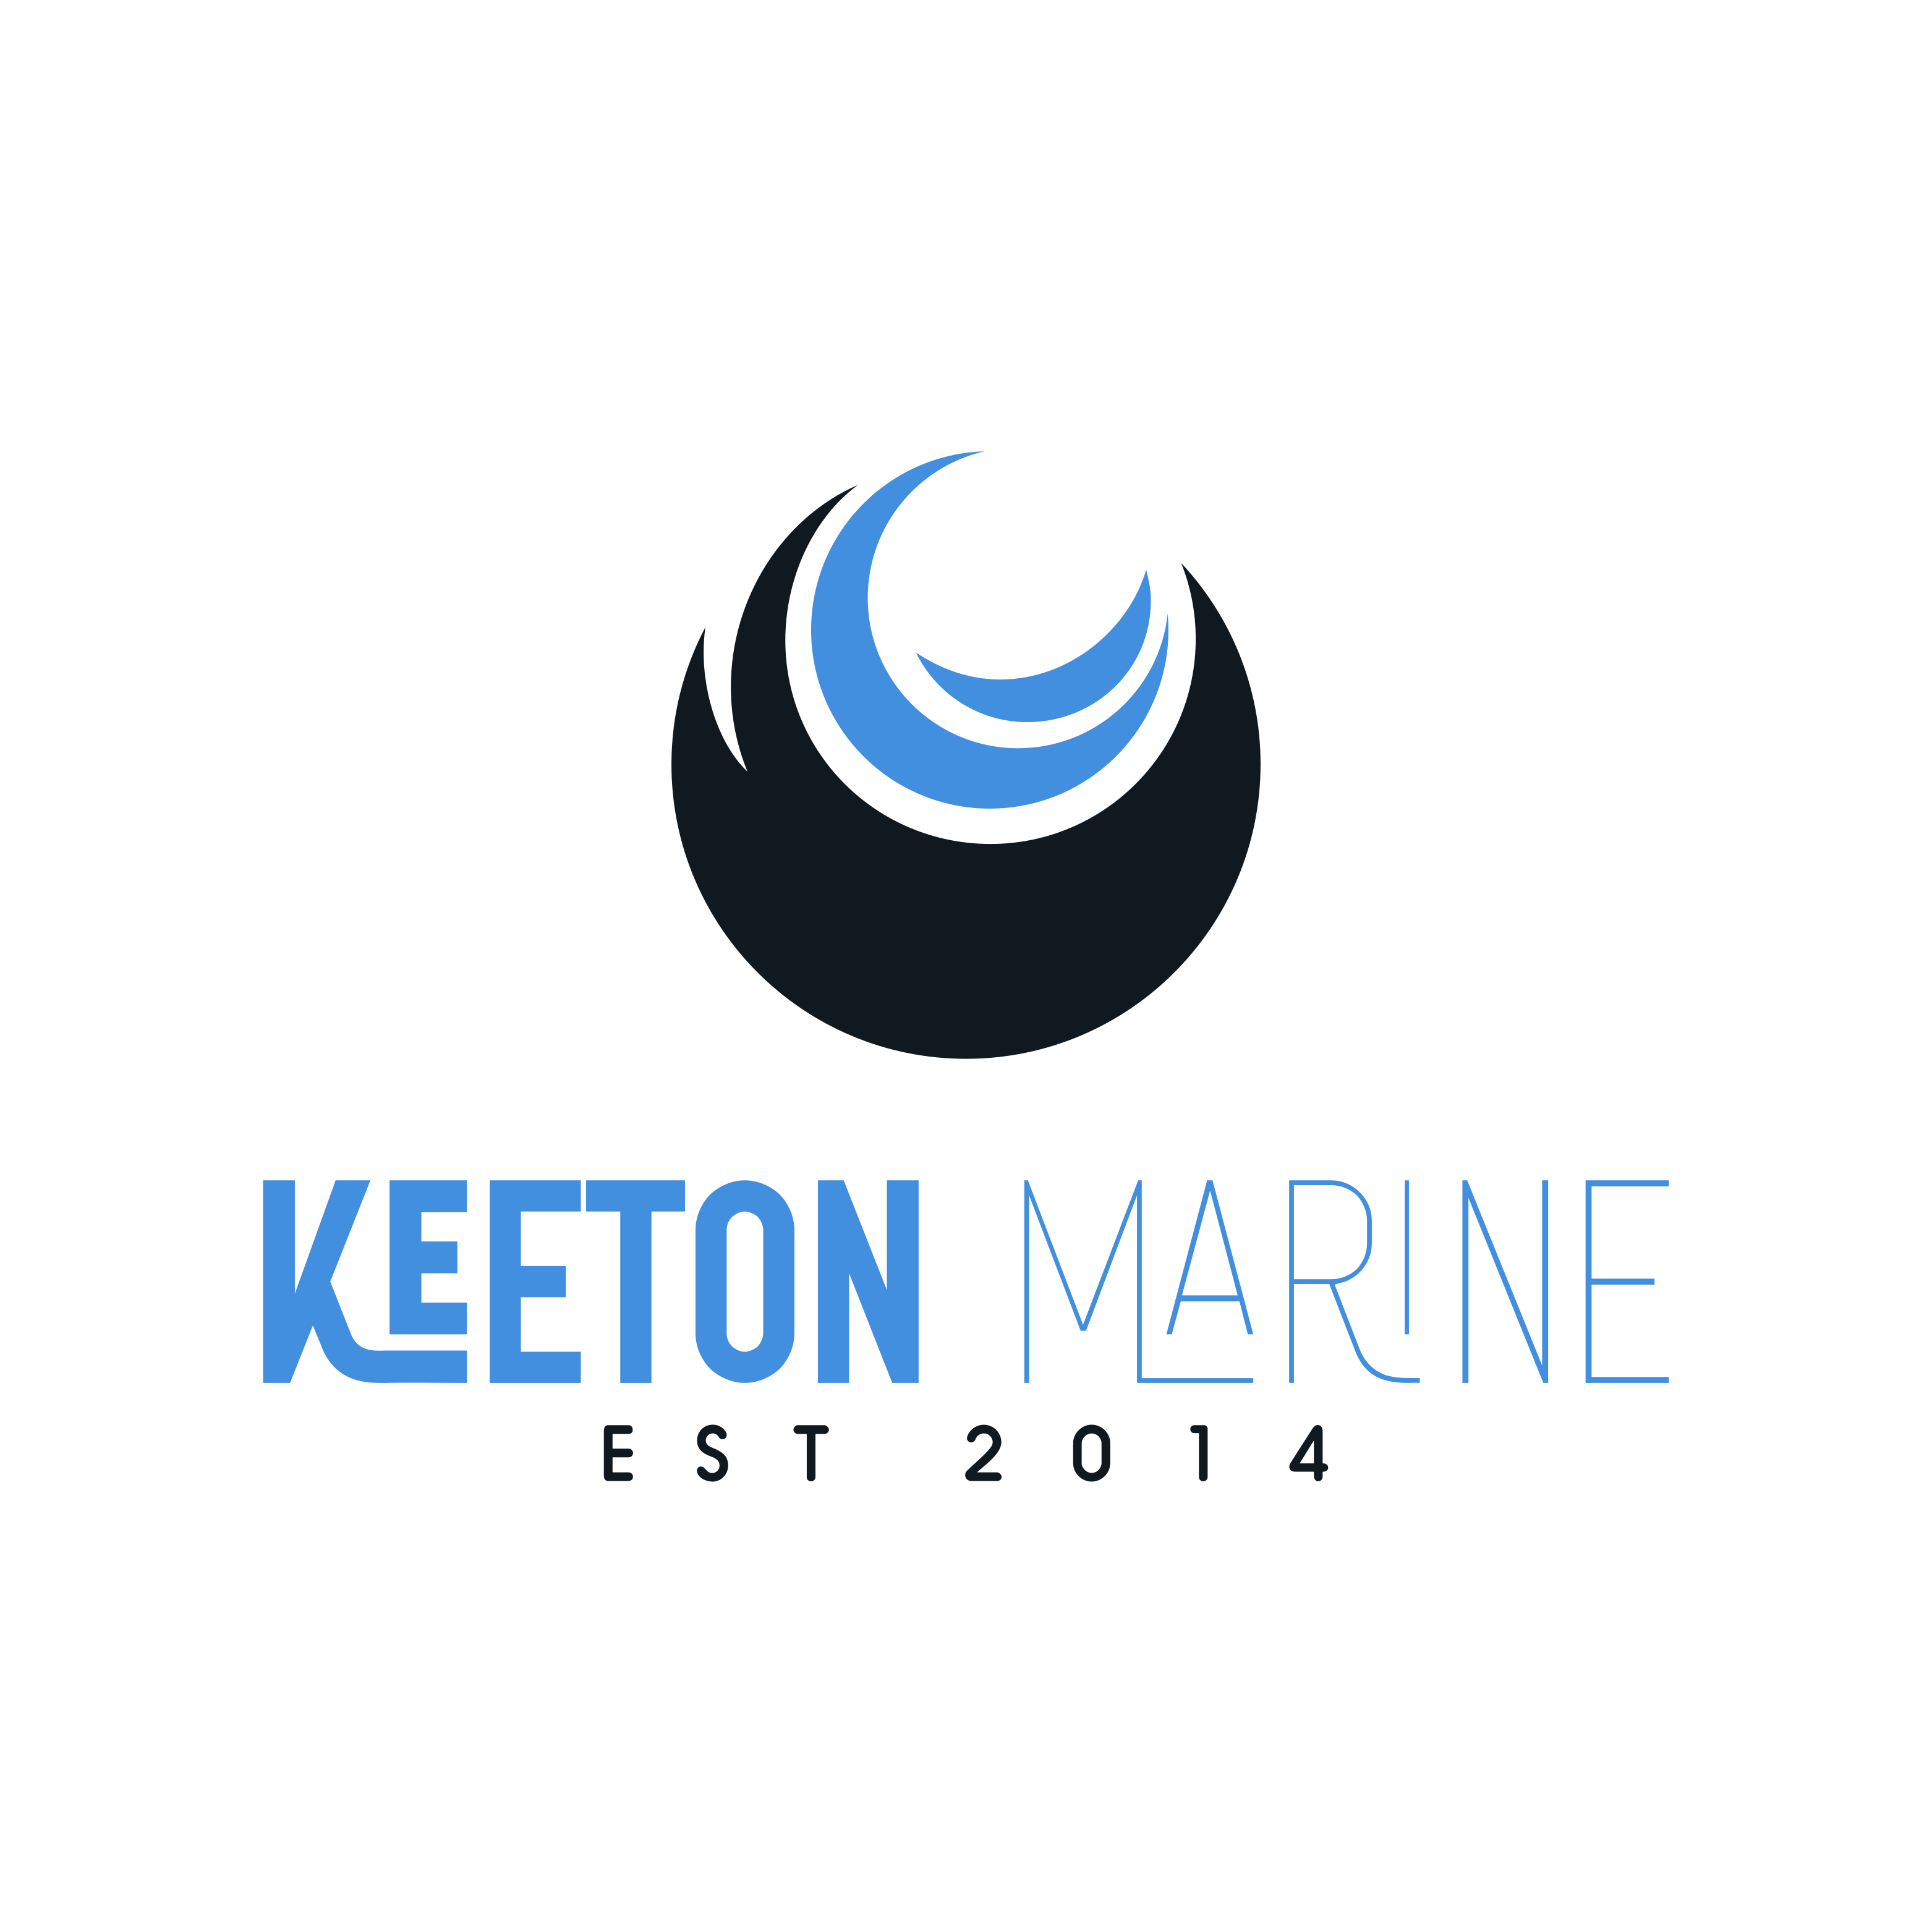 Keeton Marine